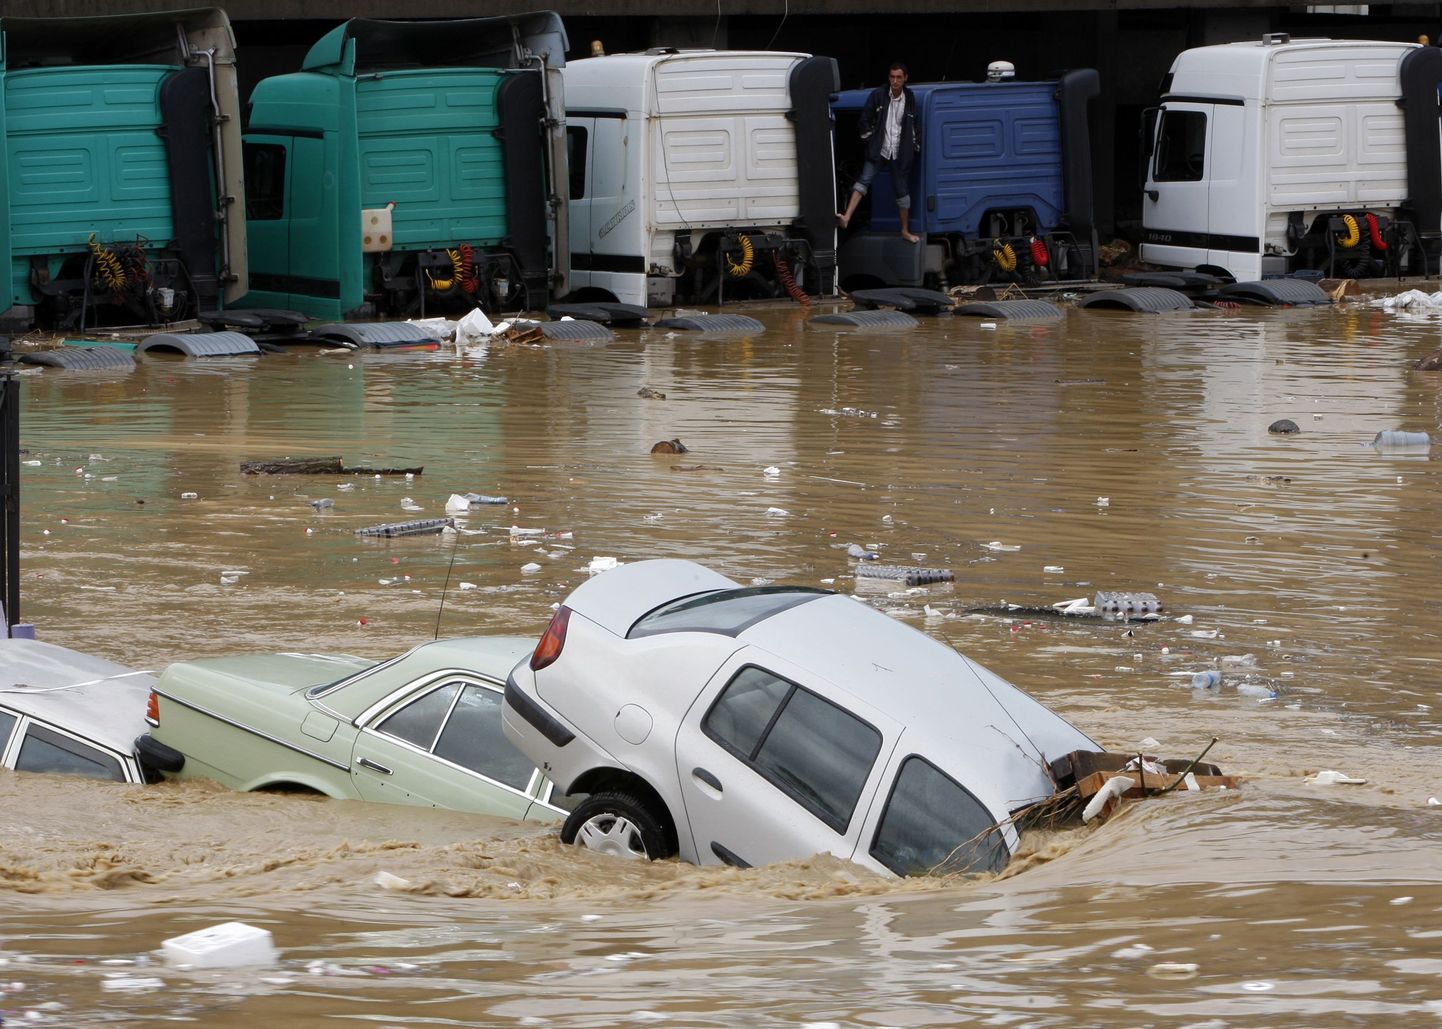 Vee alla jäänud sõidukid Türgis